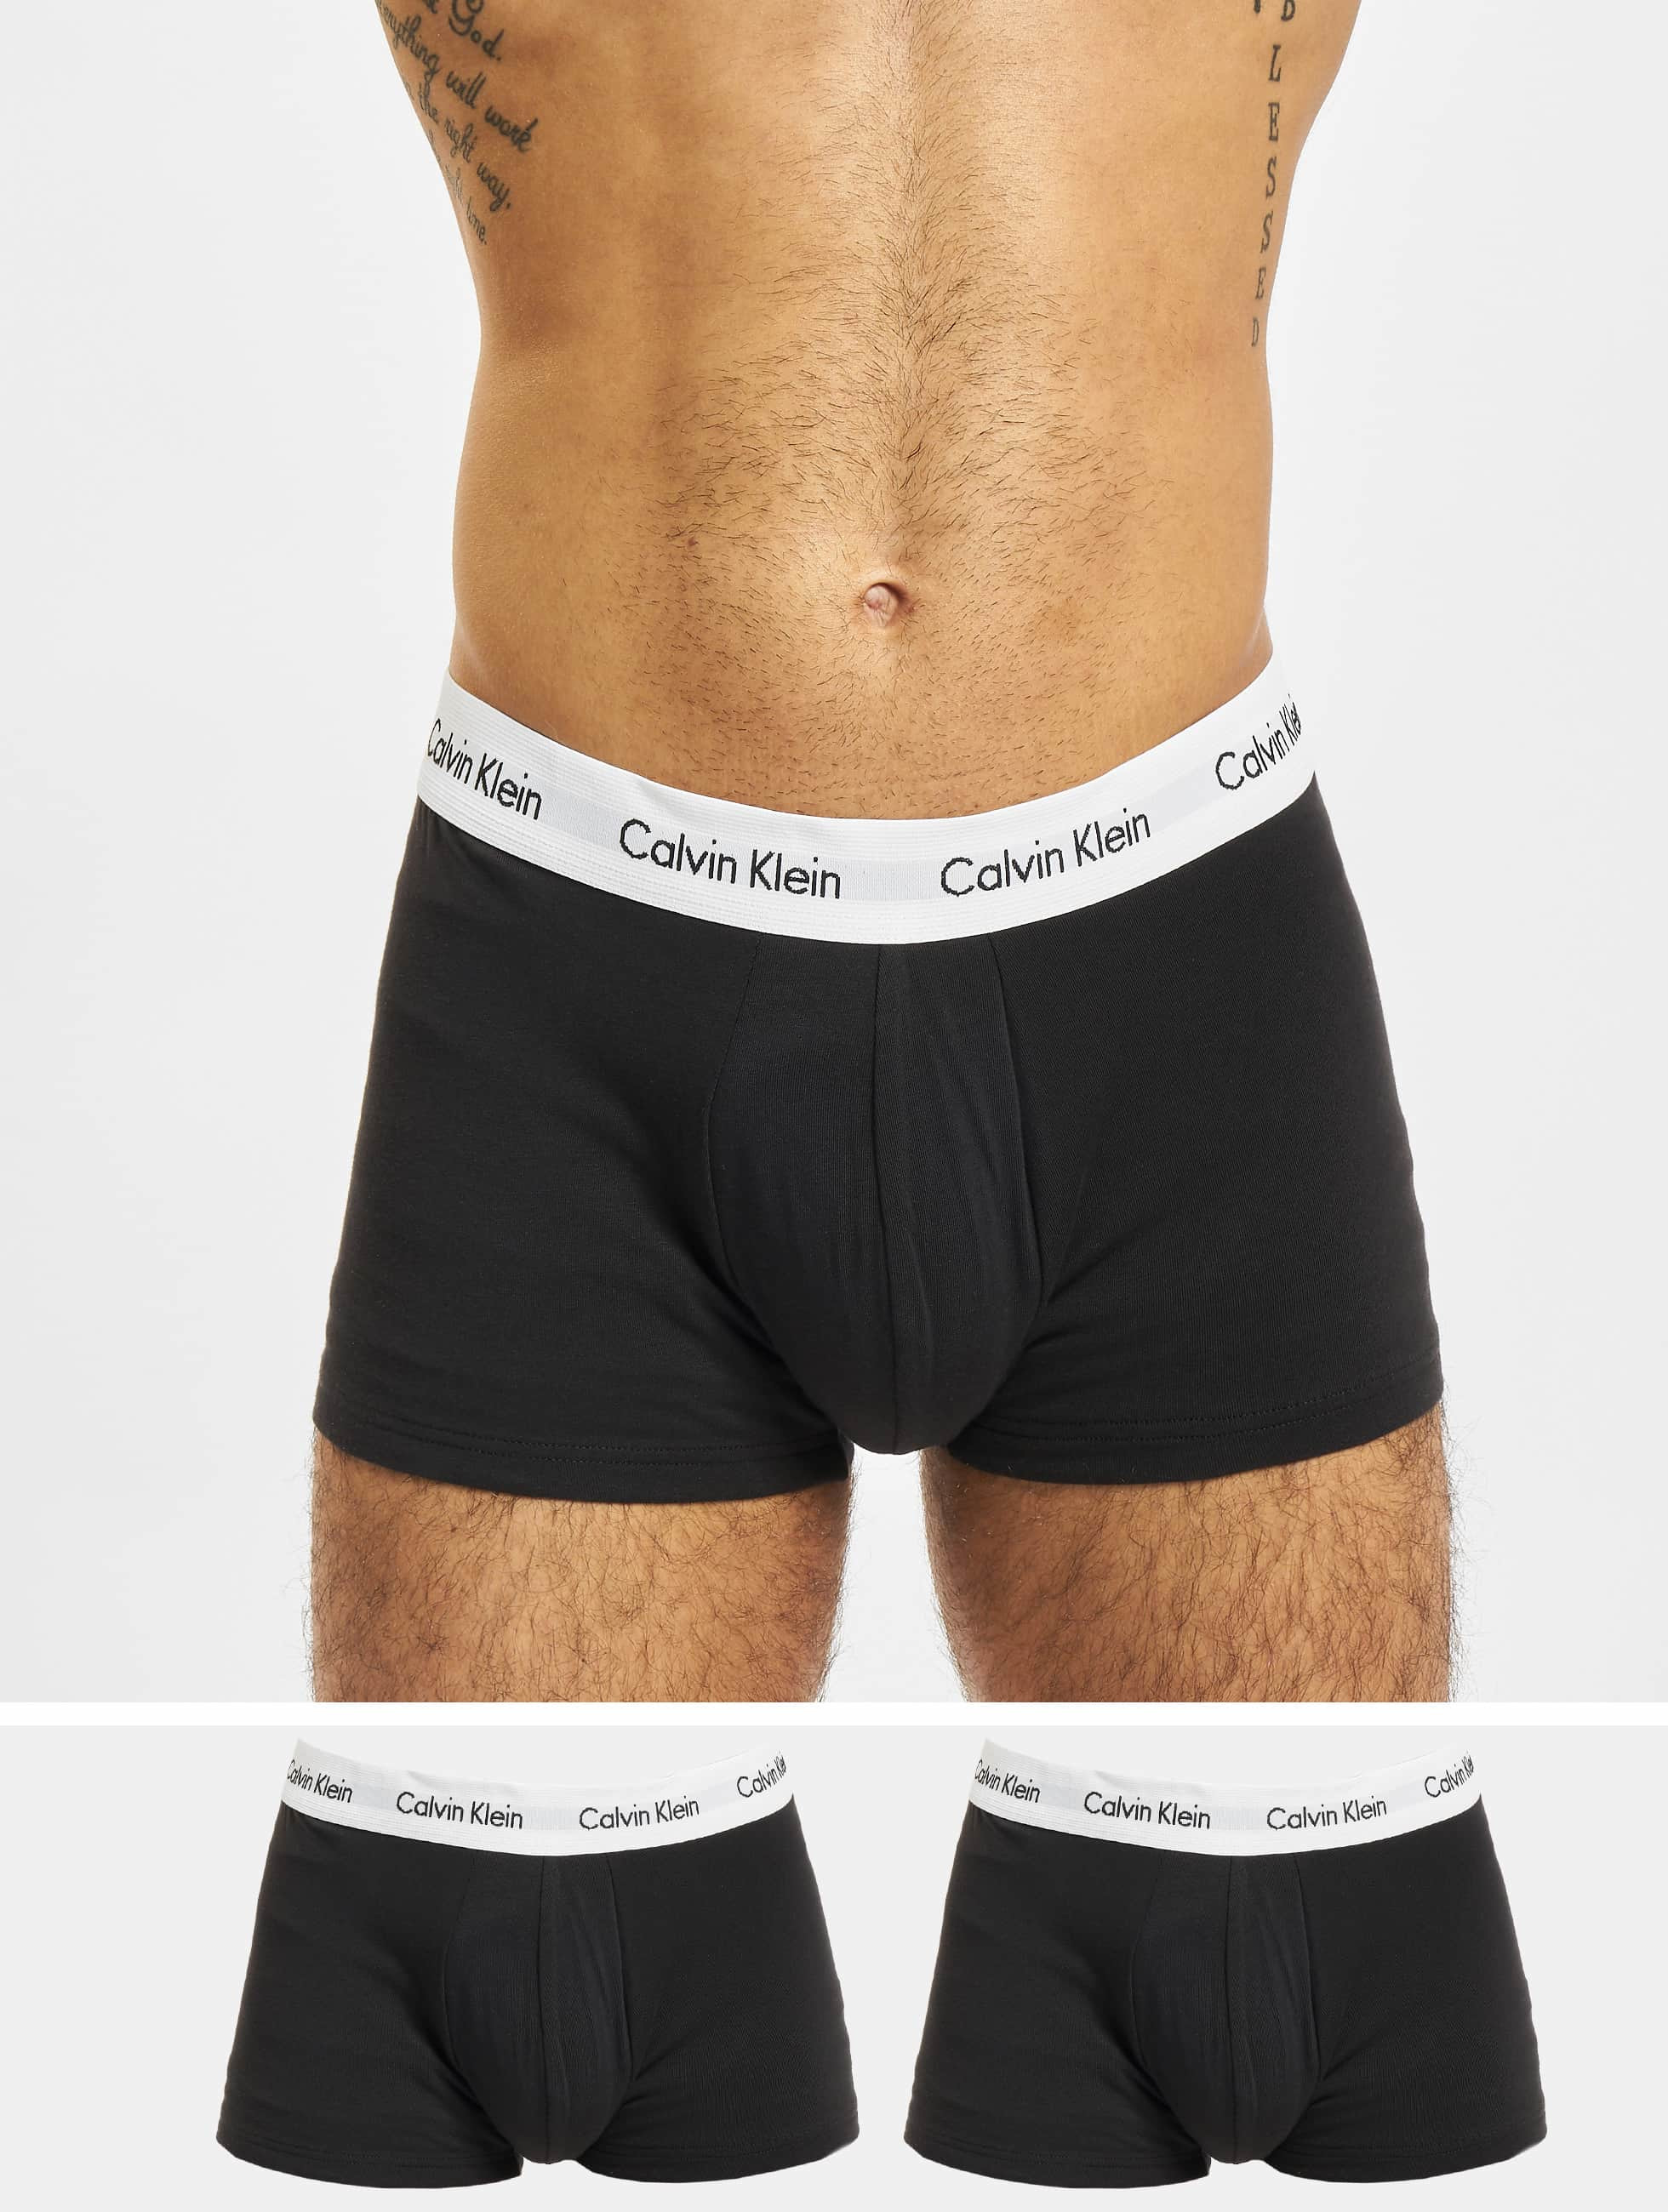 Il Verhuizer Expliciet Calvin Klein Herren Boxershorts 3er Pack Low Rise in schwarz 887472